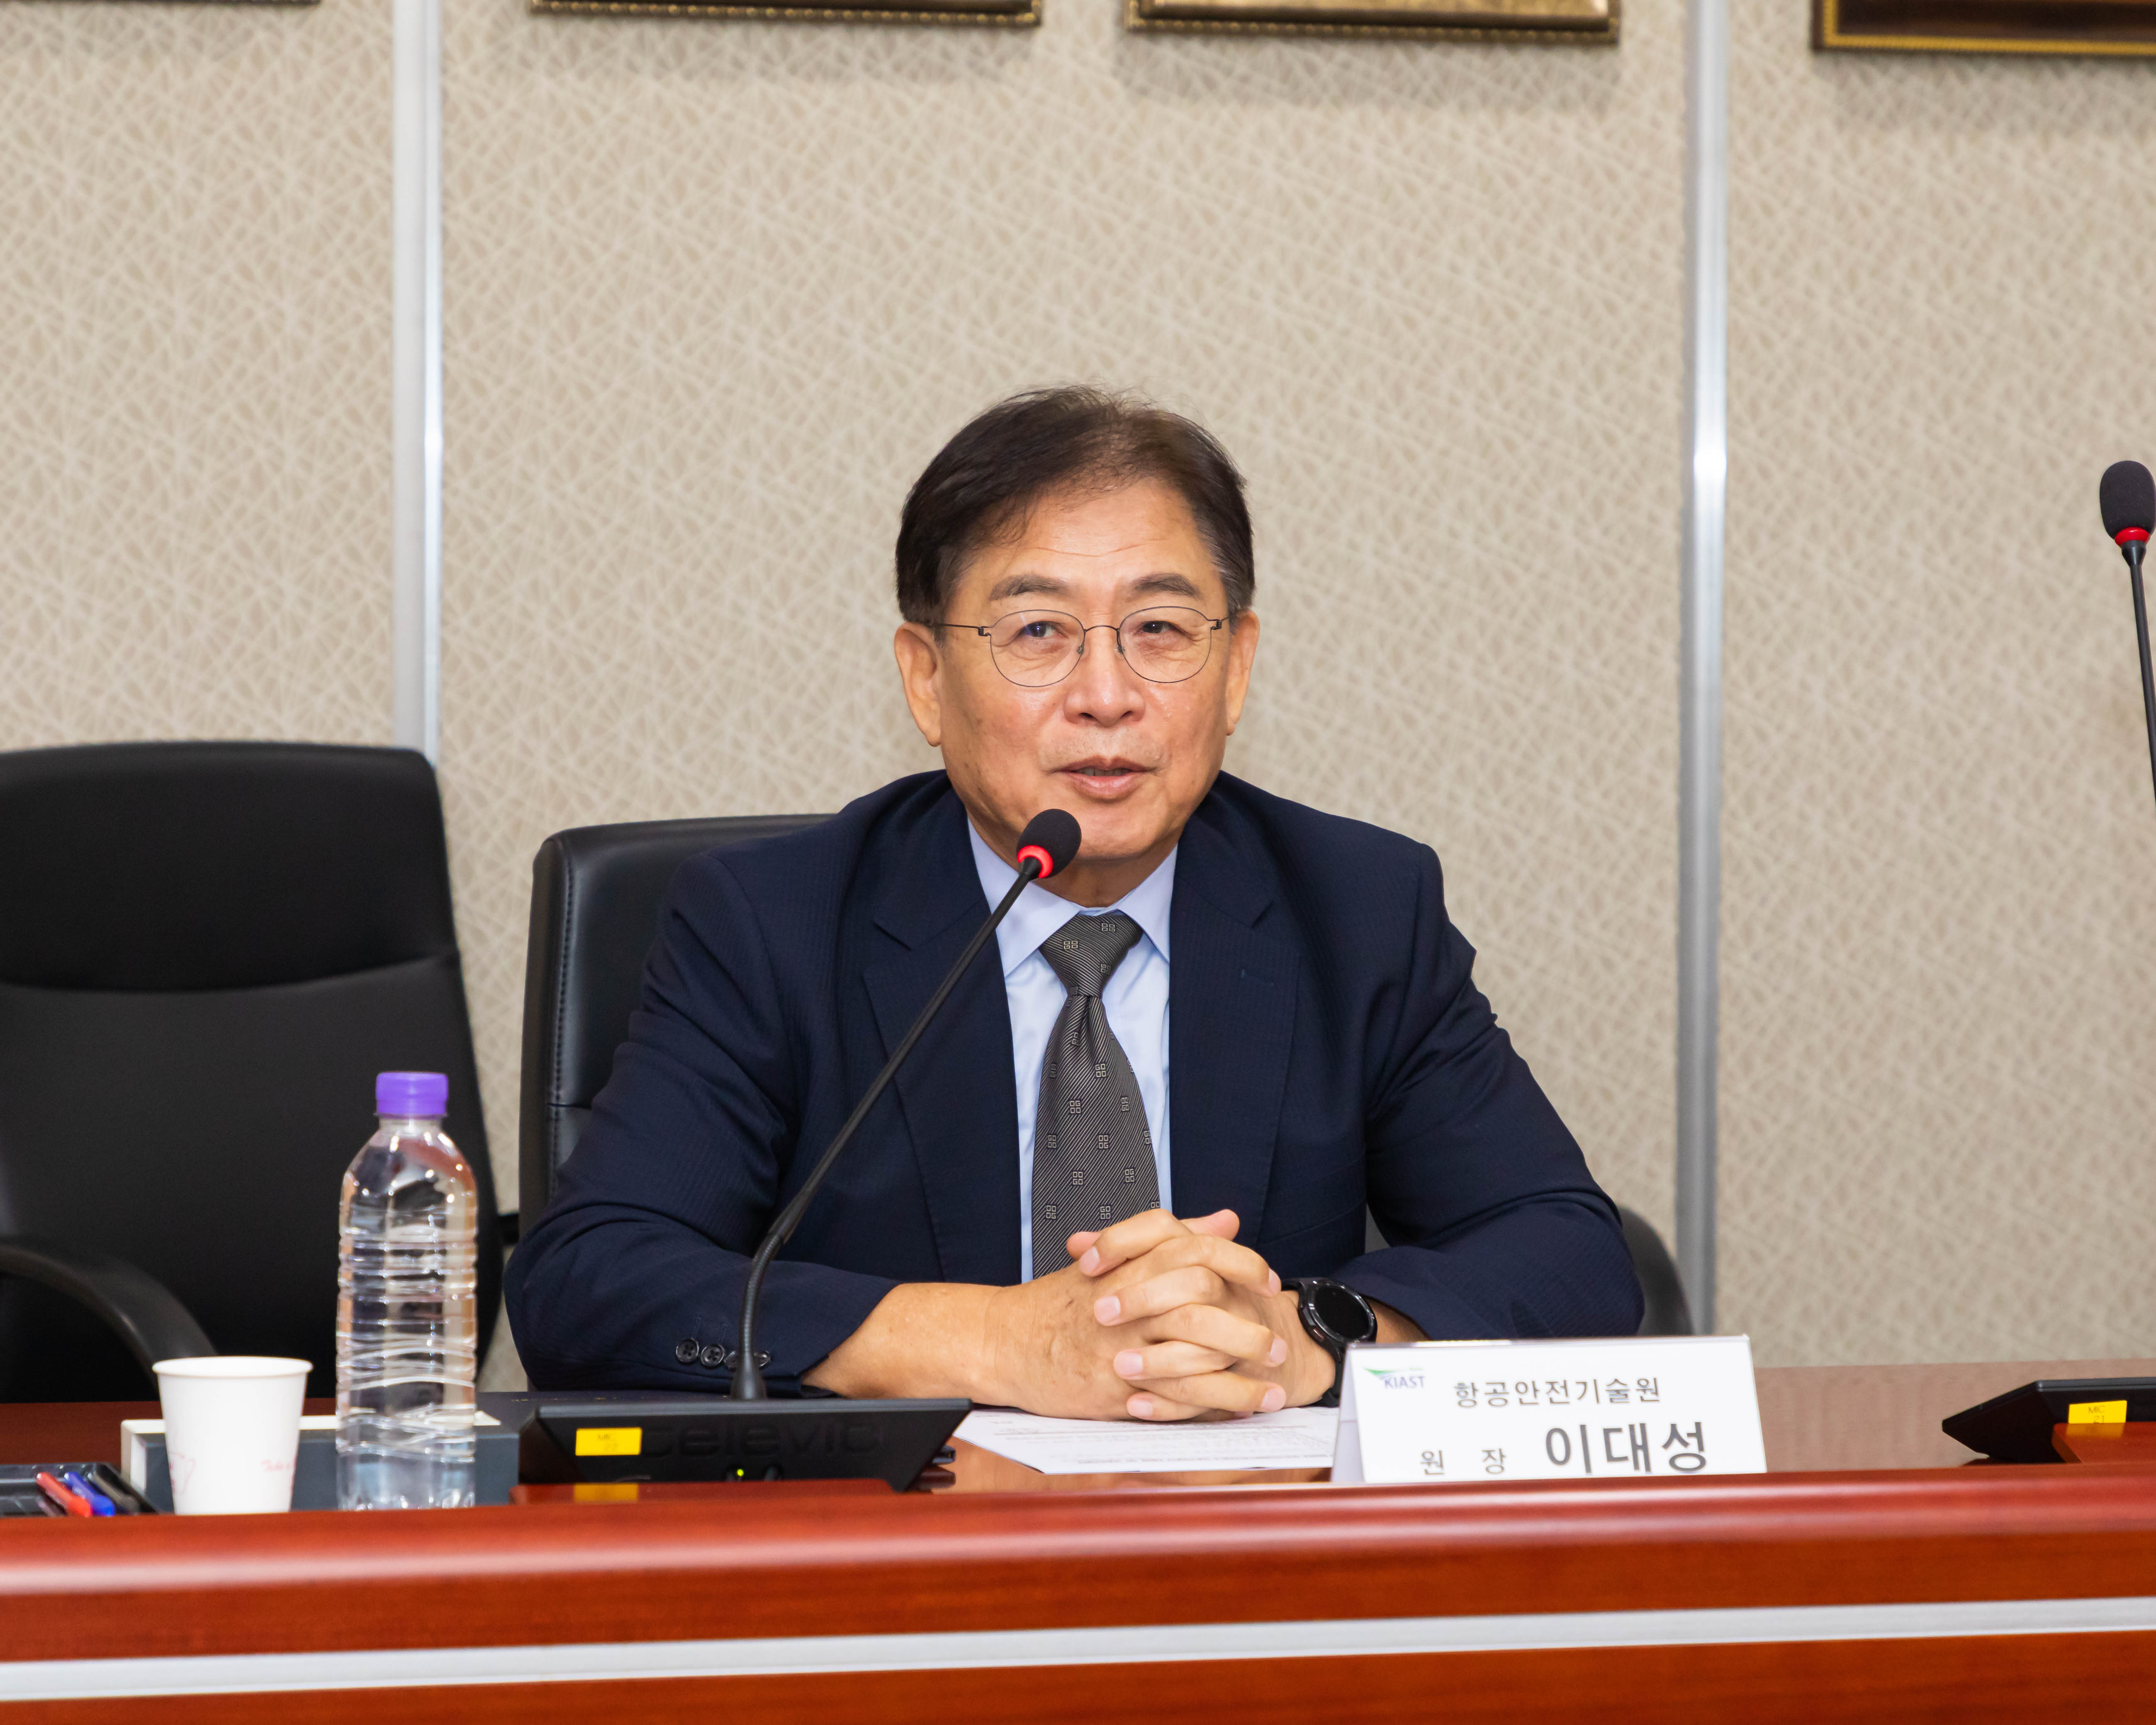 항공안전기술원-한국교통안전공단 간 MOU 협약식 참석